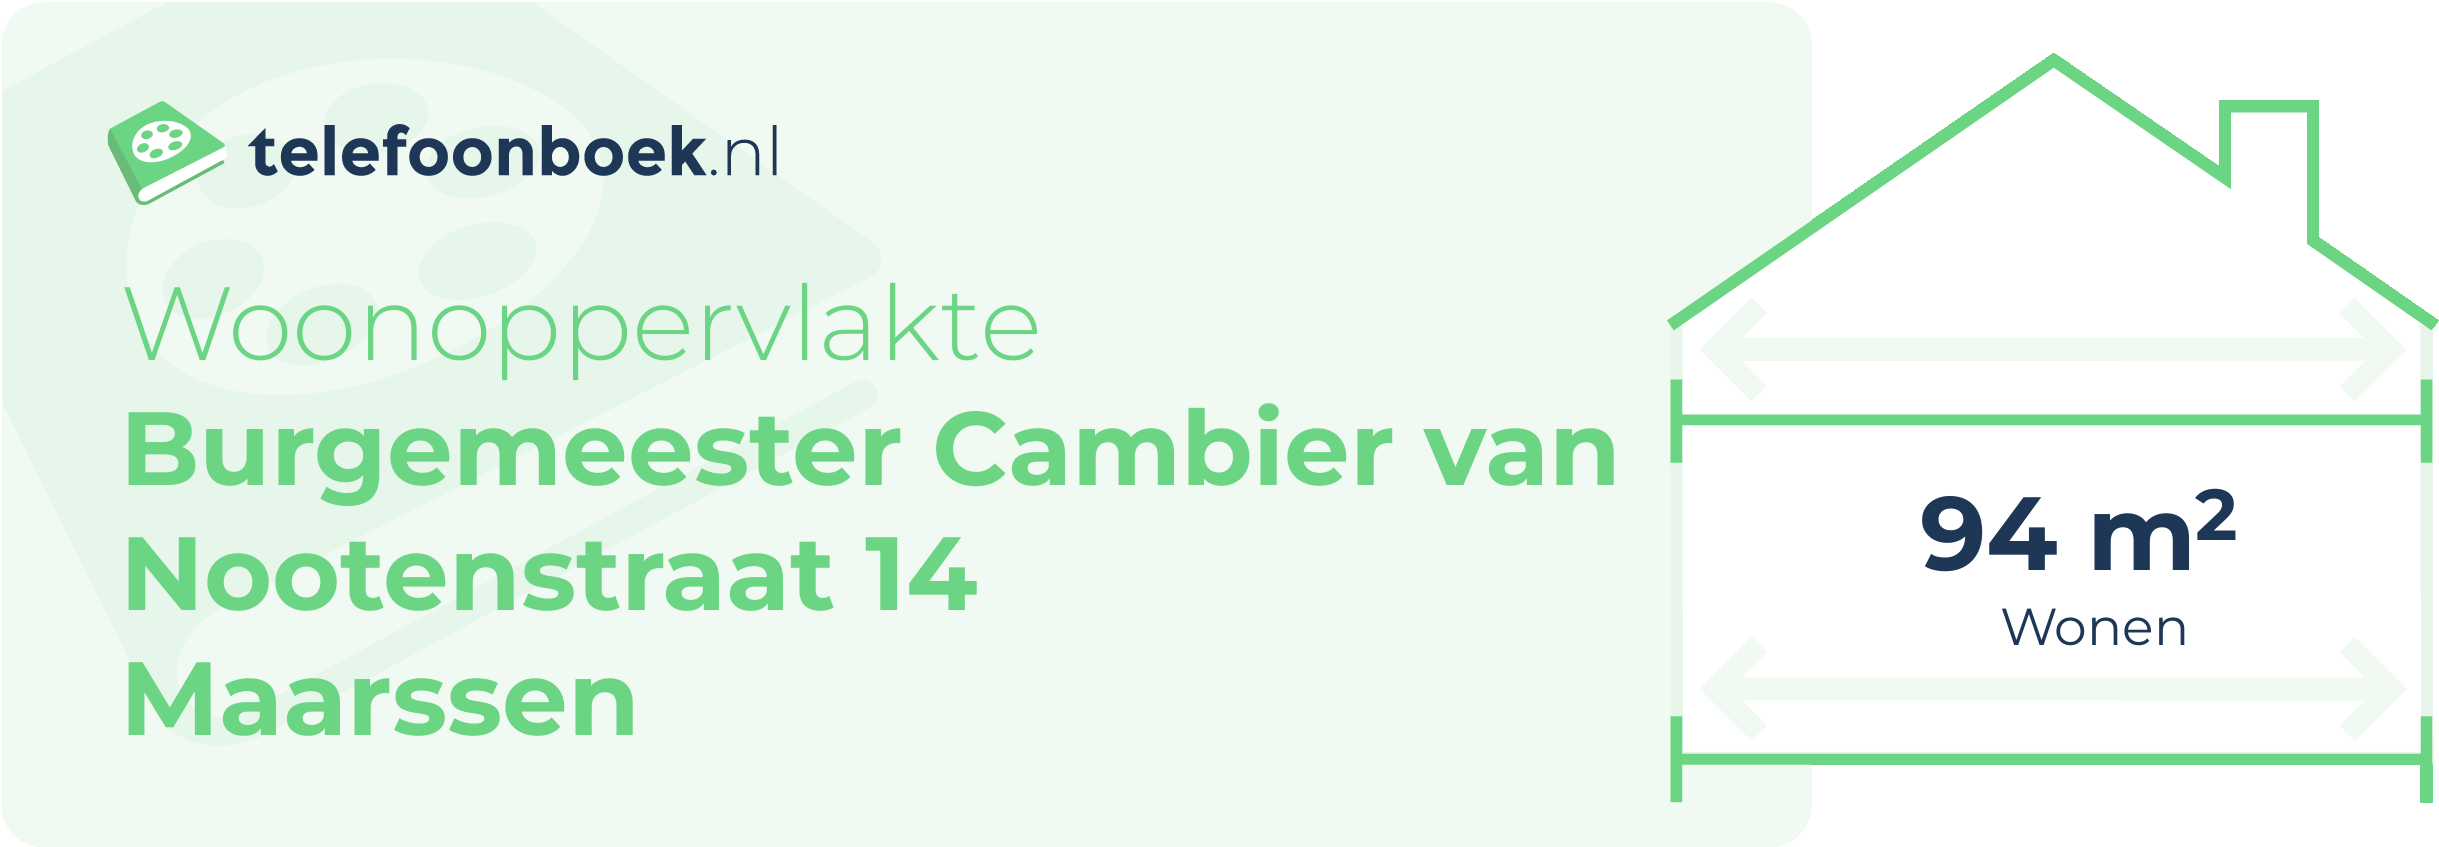 Woonoppervlakte Burgemeester Cambier Van Nootenstraat 14 Maarssen